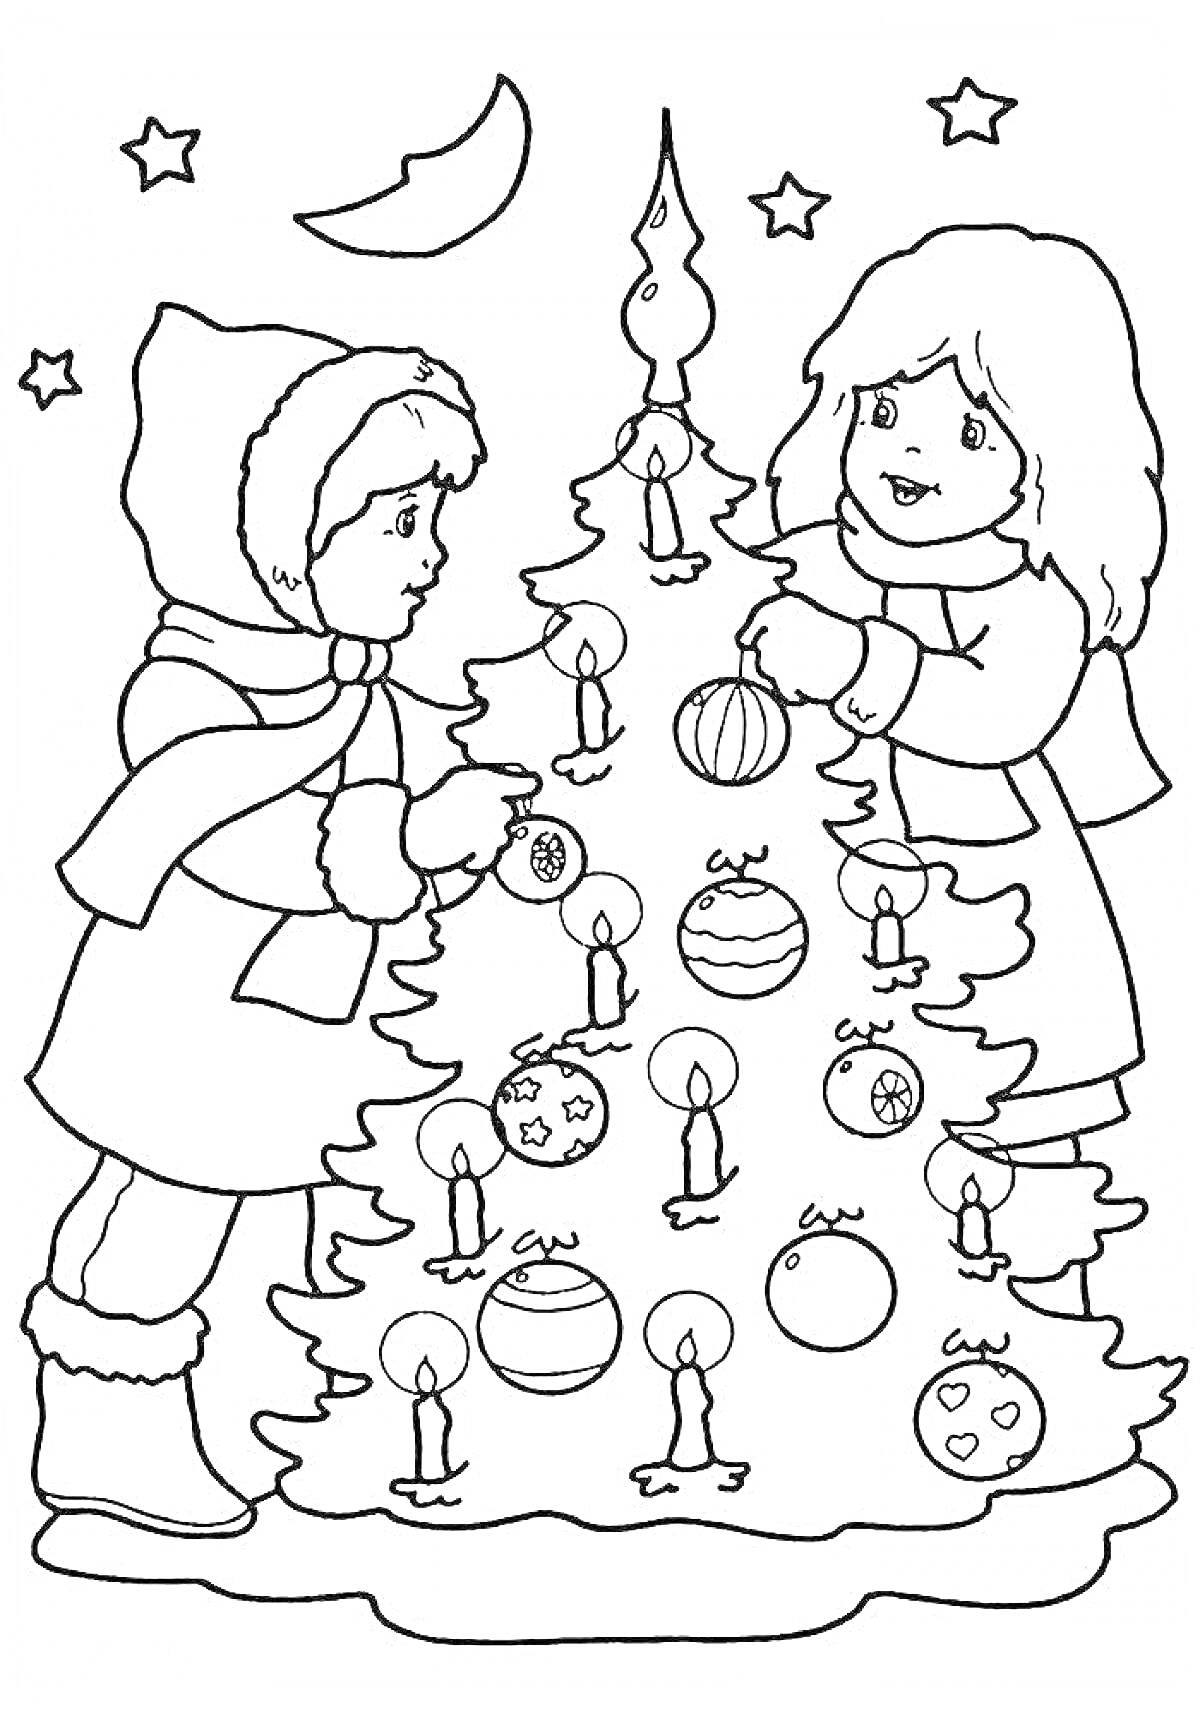 Раскраска Дети украшают новогоднюю ёлку игрушками и свечами под звездами и луной